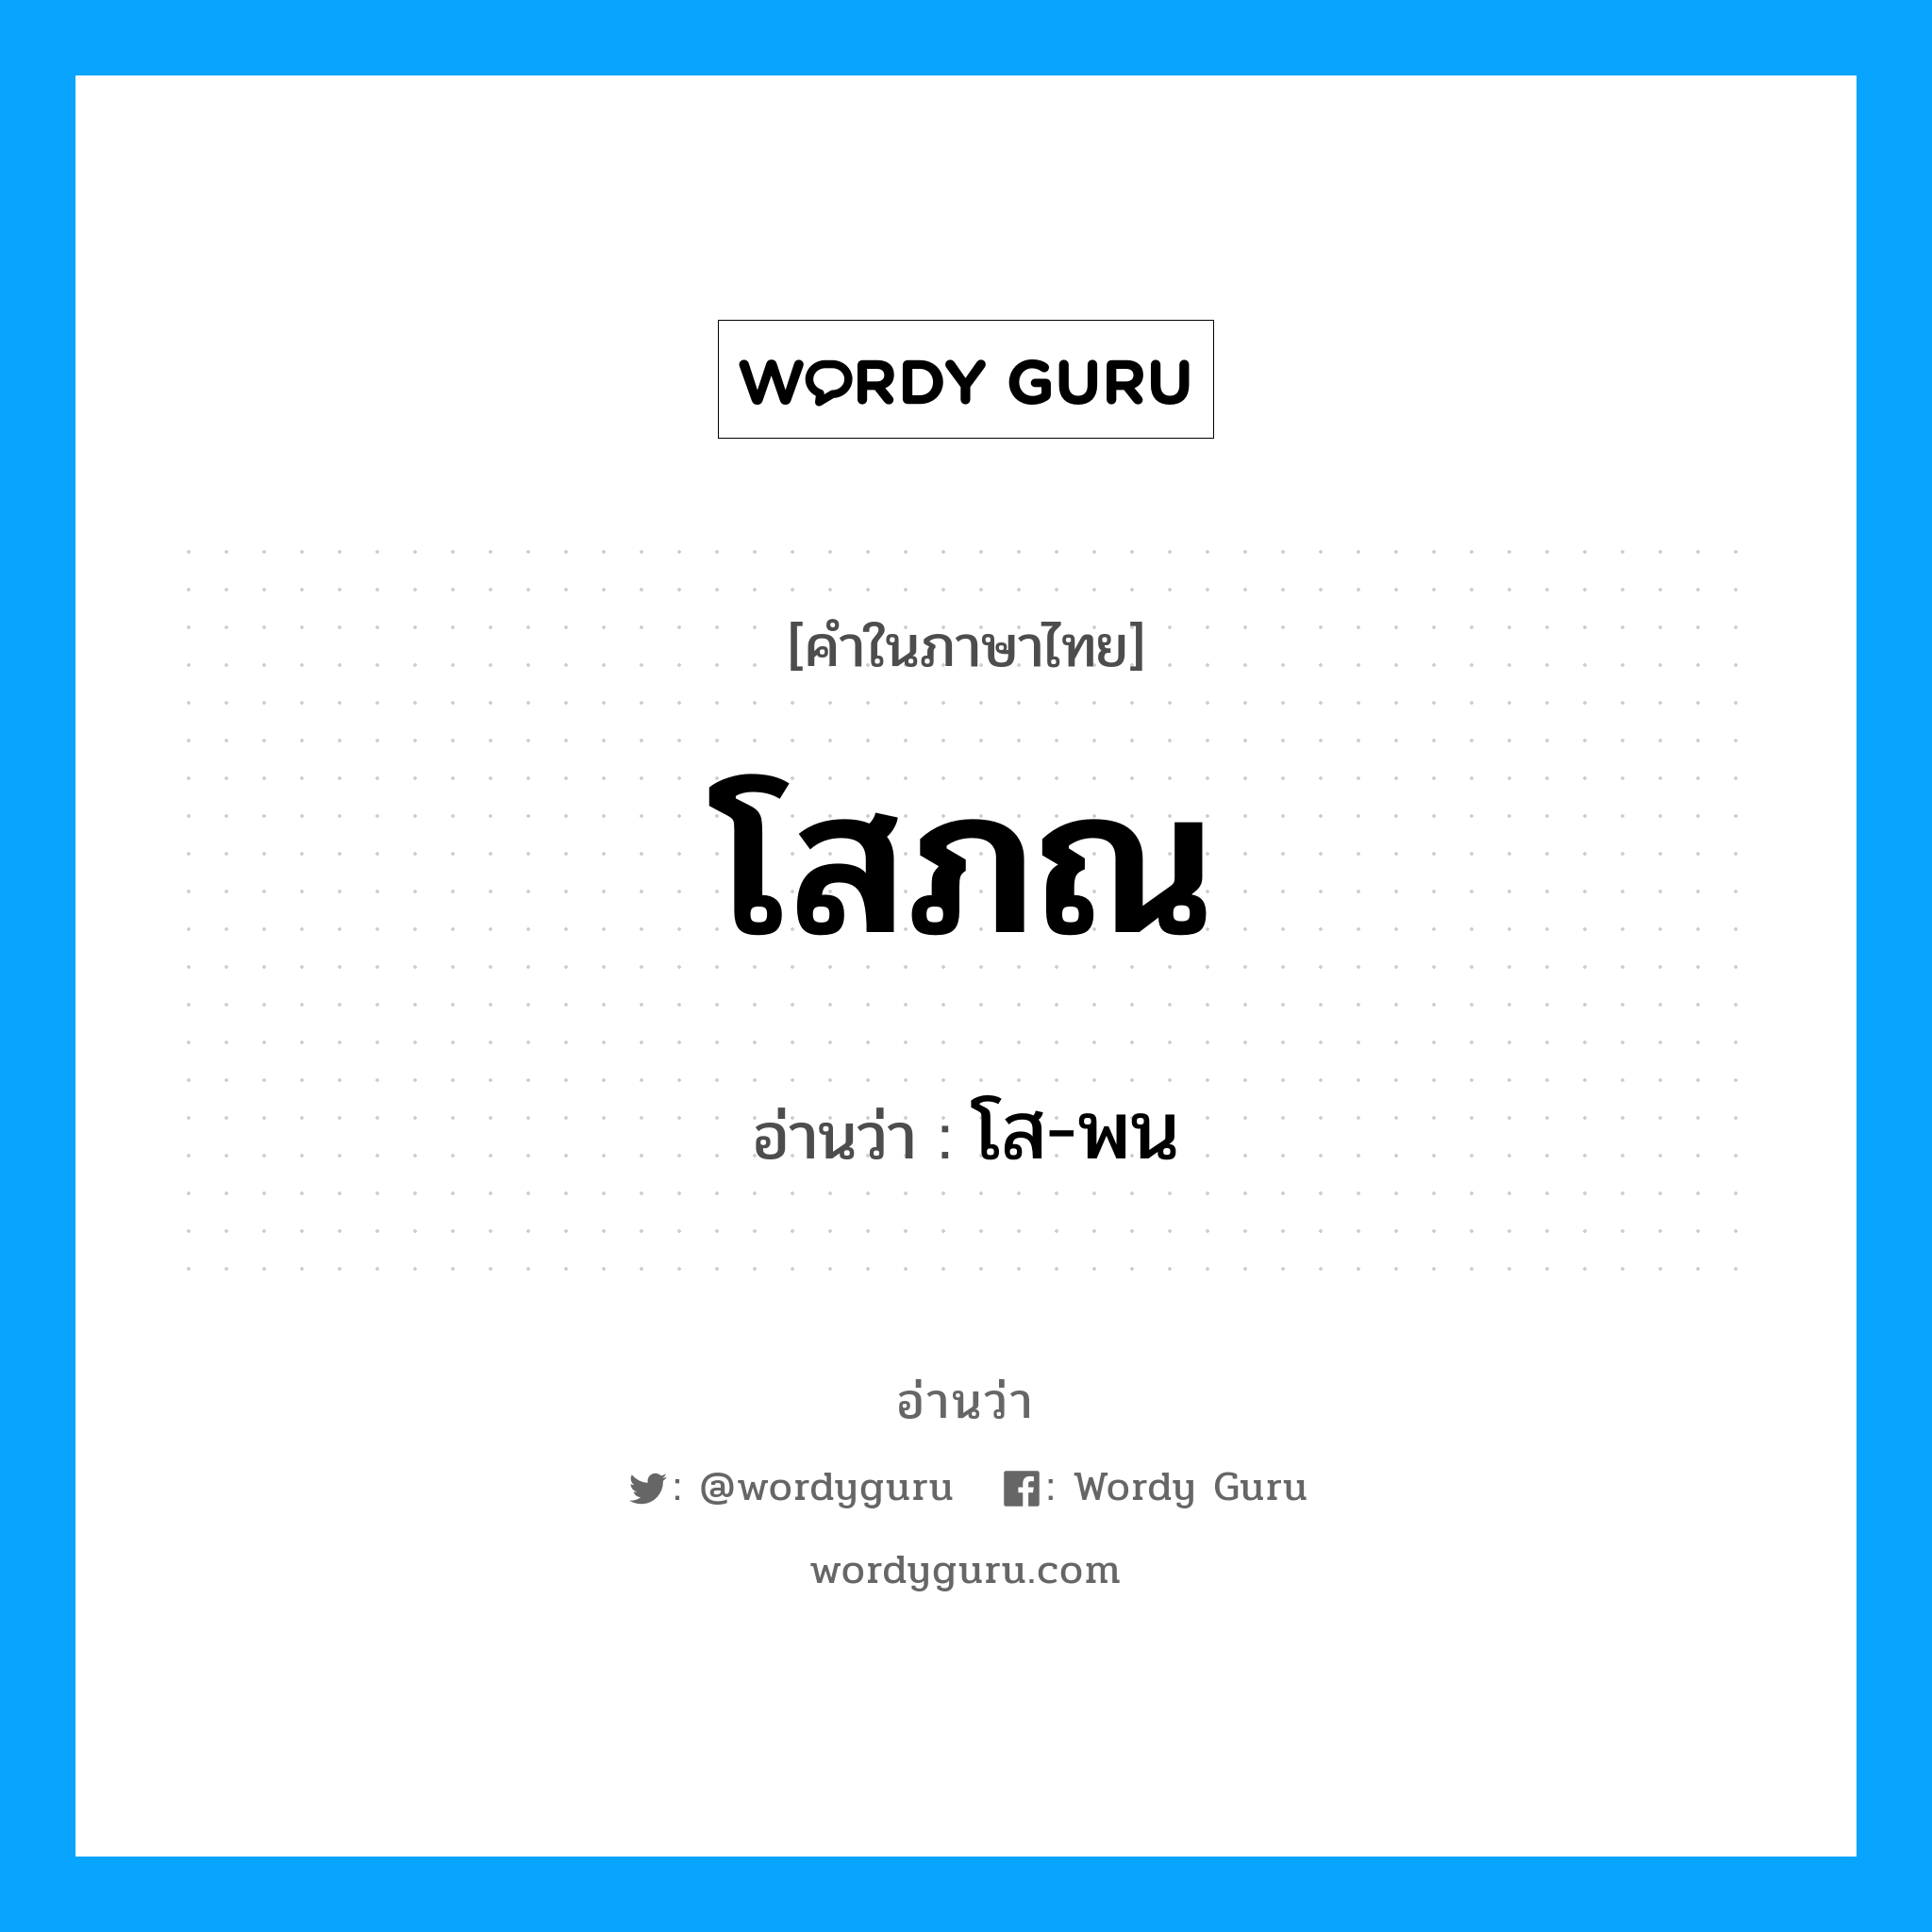 โส-พน เป็นคำอ่านของคำไหน?, คำในภาษาไทย โส-พน อ่านว่า โสภณ